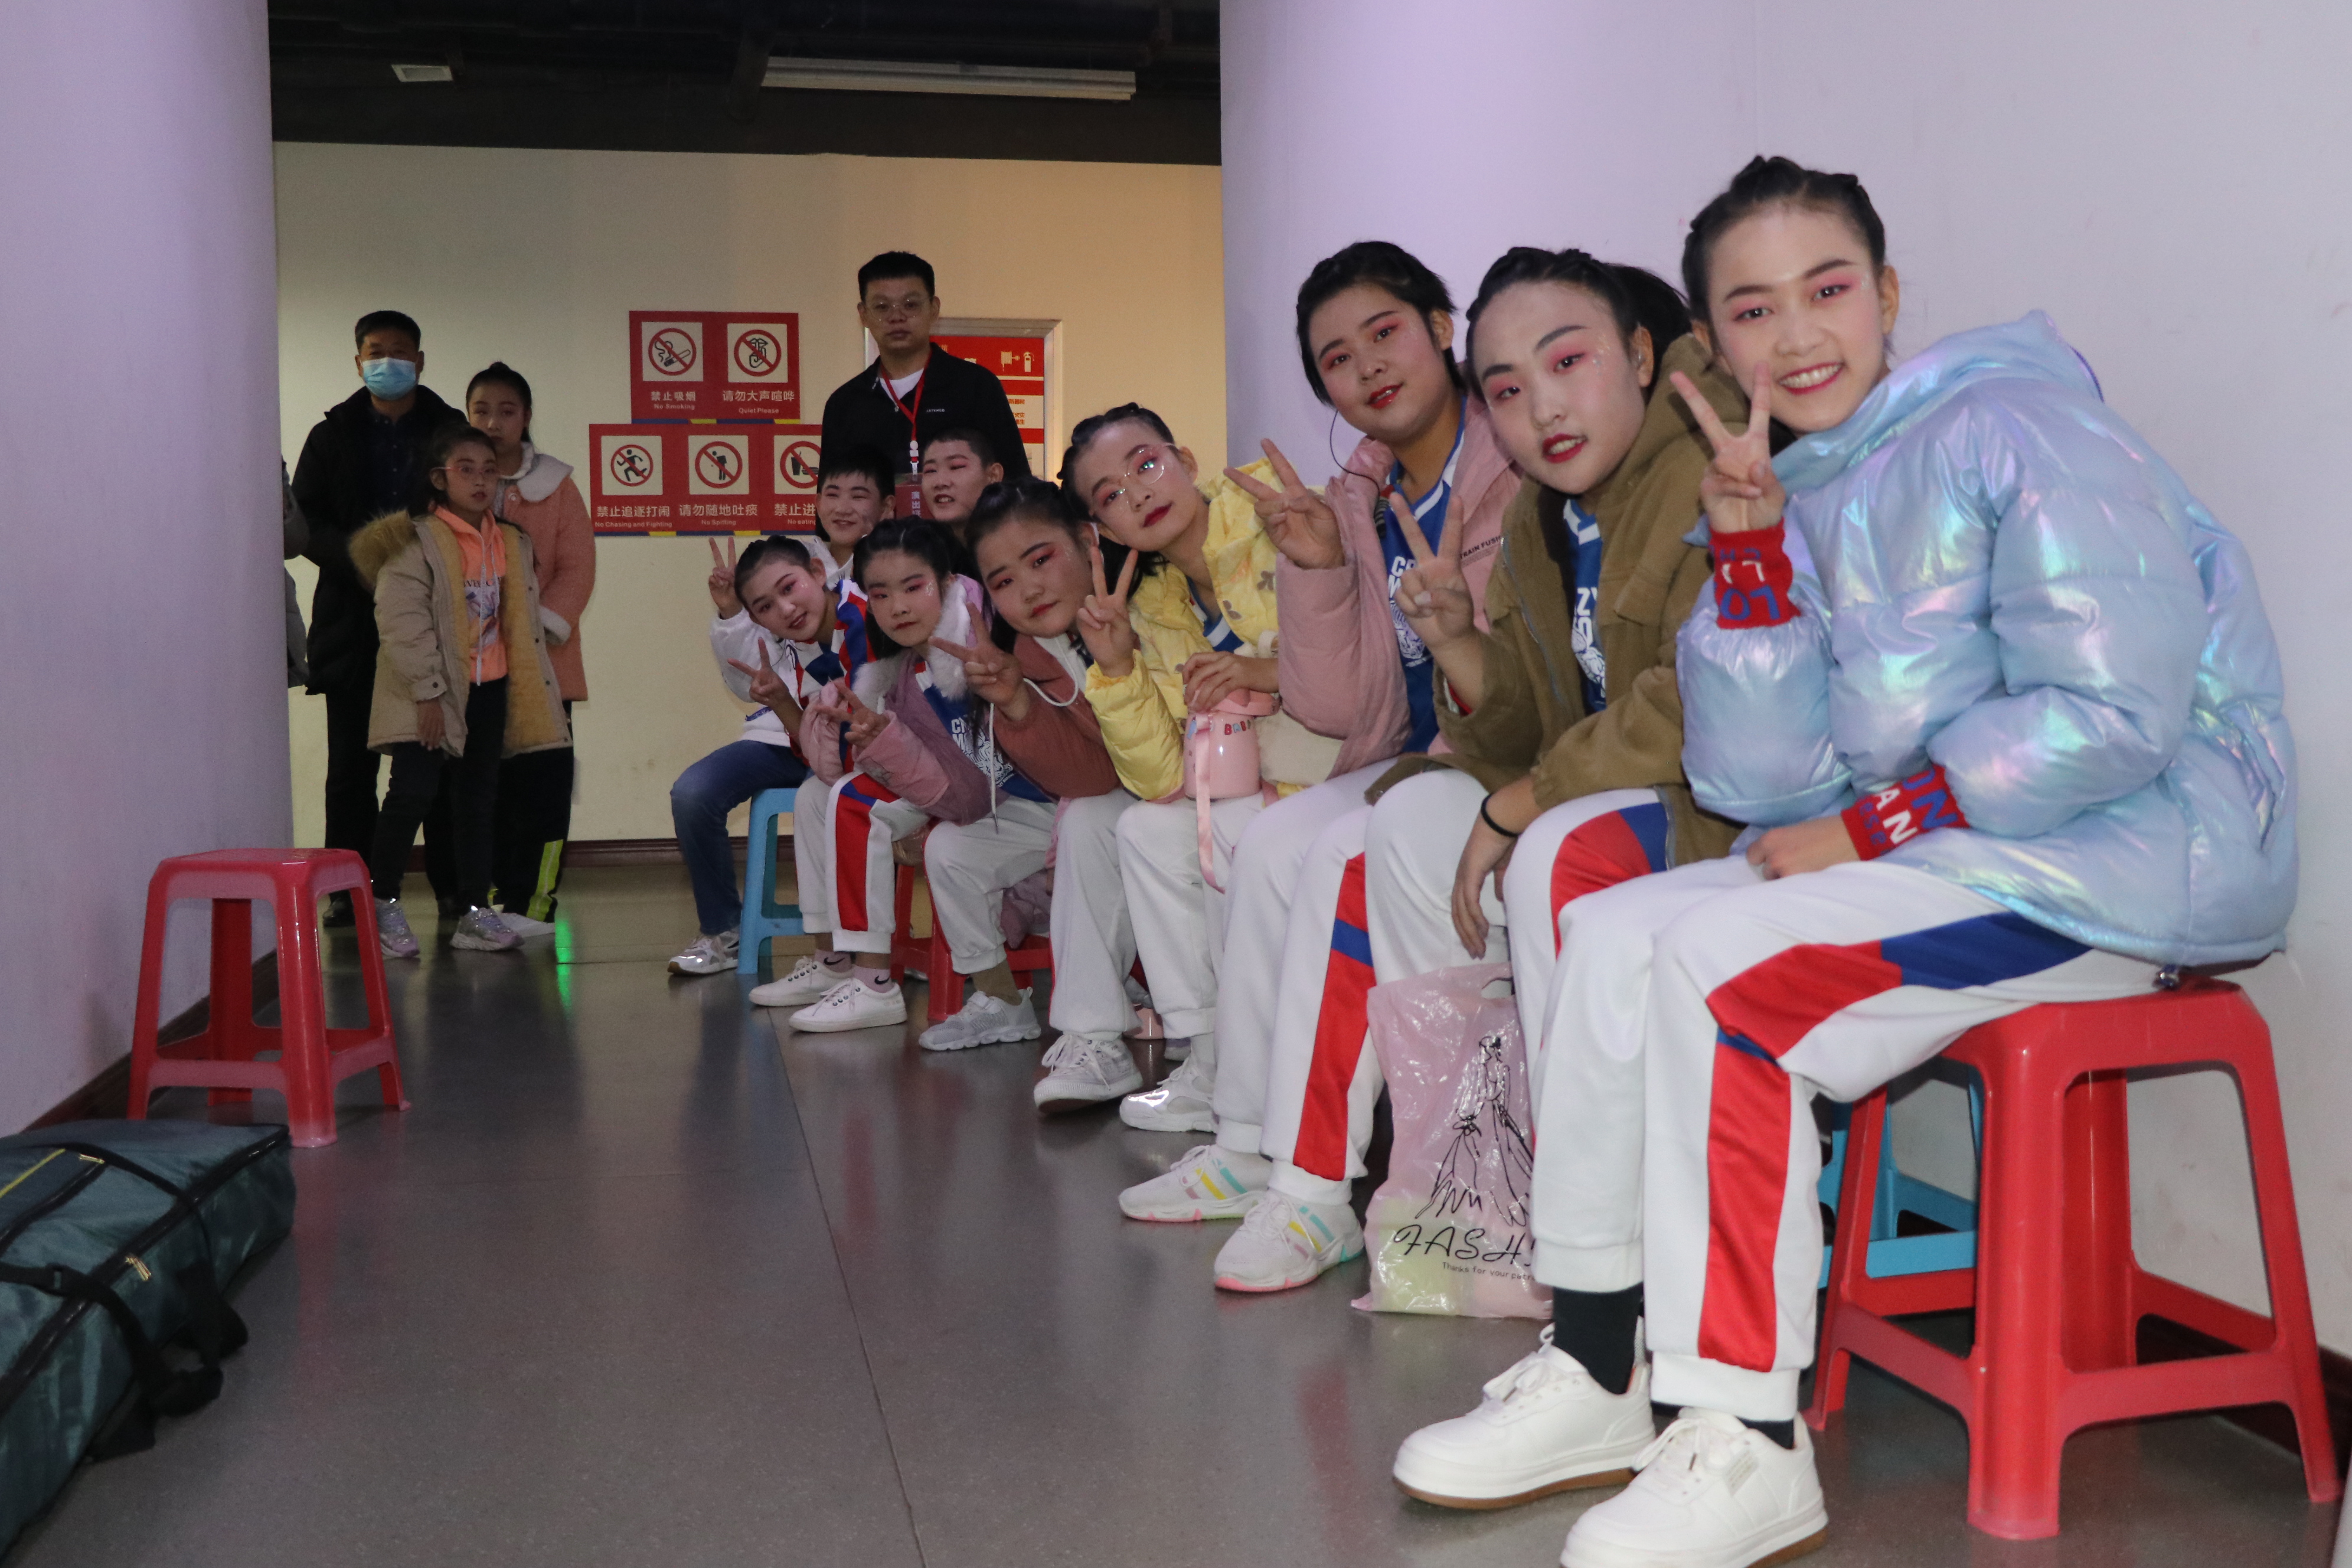 這就是山東·濱州|“魯韻飛歌”濱州市第三屆青少兒網絡春晚首場錄制完成